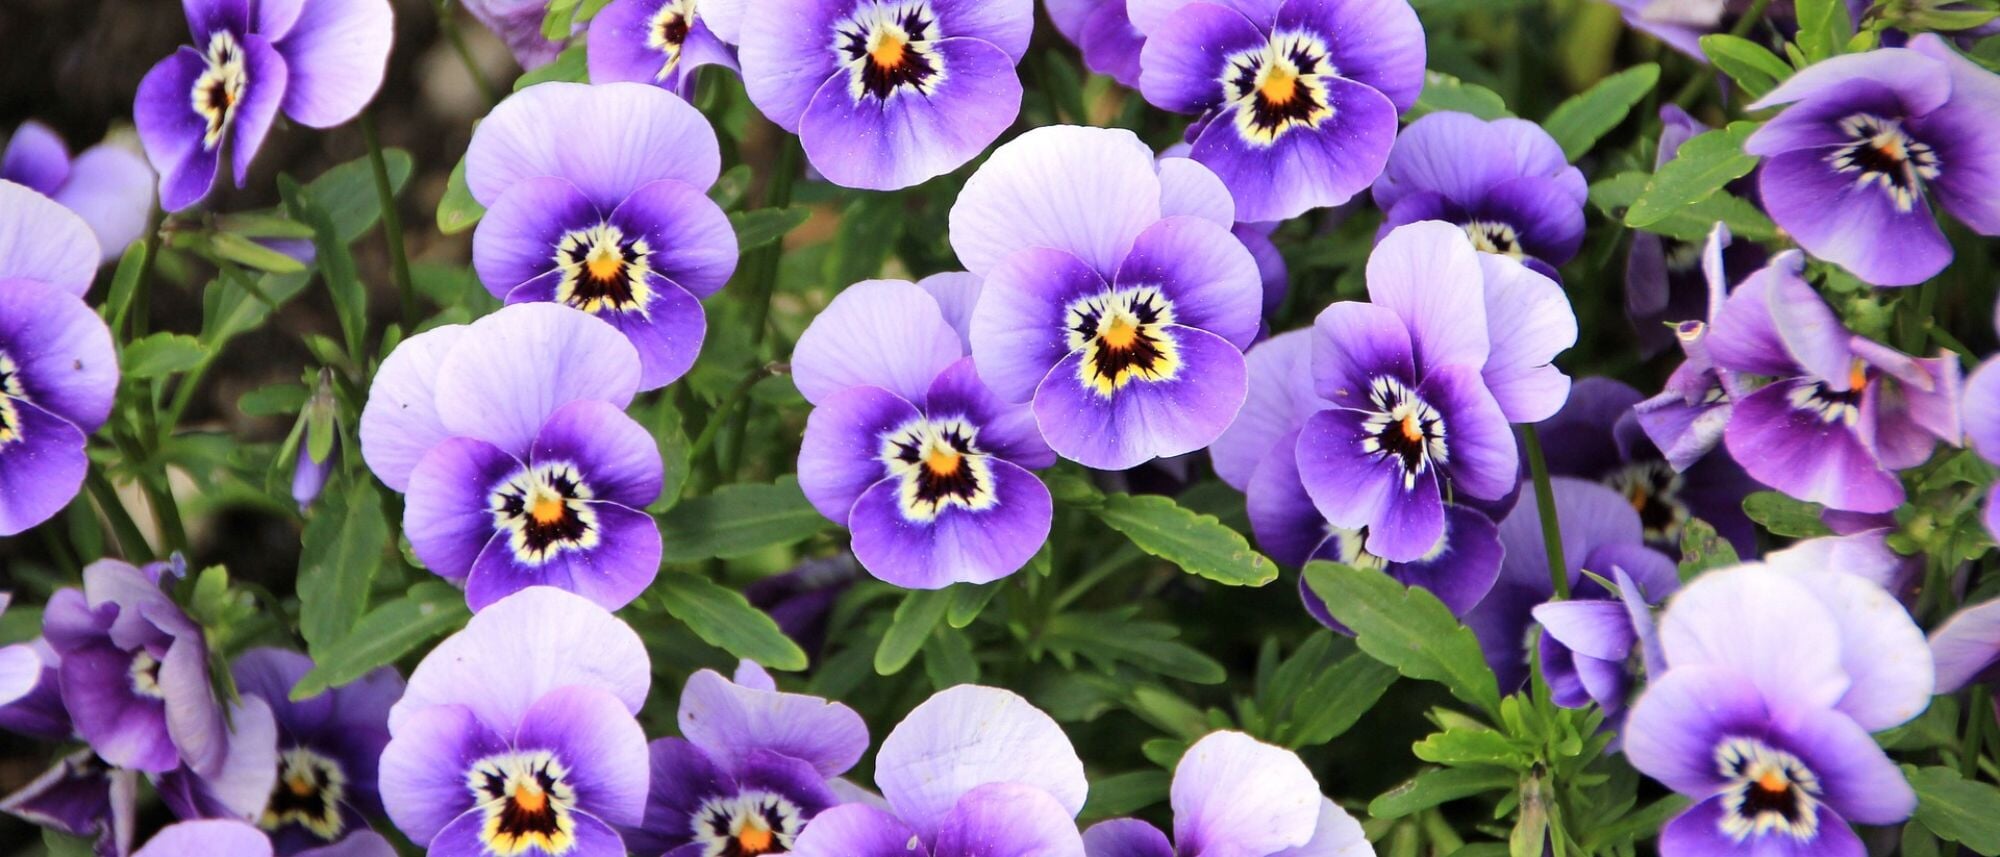 Vibrant violet flower blooms